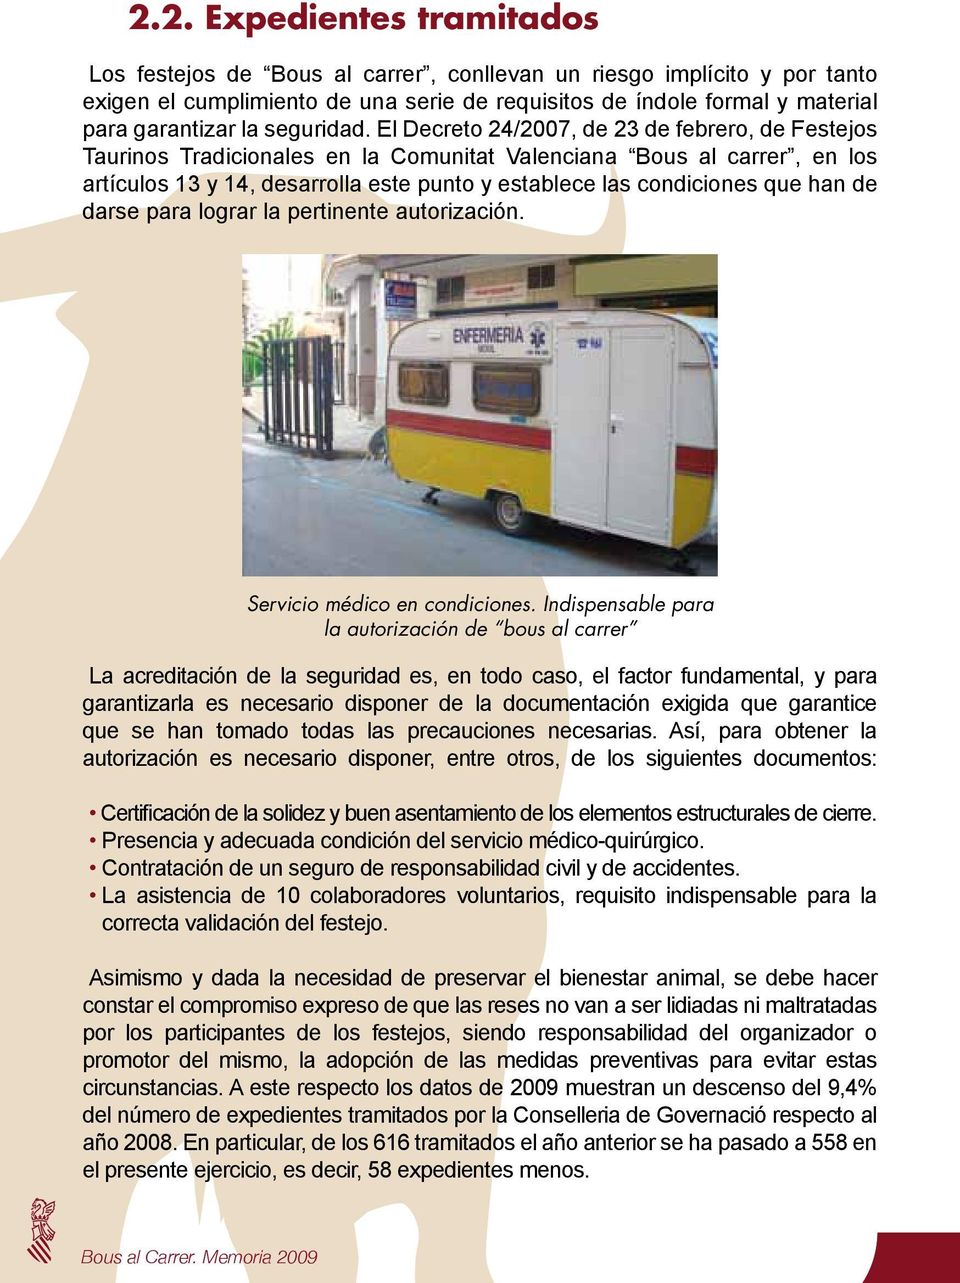 El Decreto 24/2007, de 23 de febrero, de Festejos Taurinos Tradicionales en la Comunitat Valenciana Bous al carrer, en los artículos 13 y 14, desarrolla este punto y establece las condiciones que han